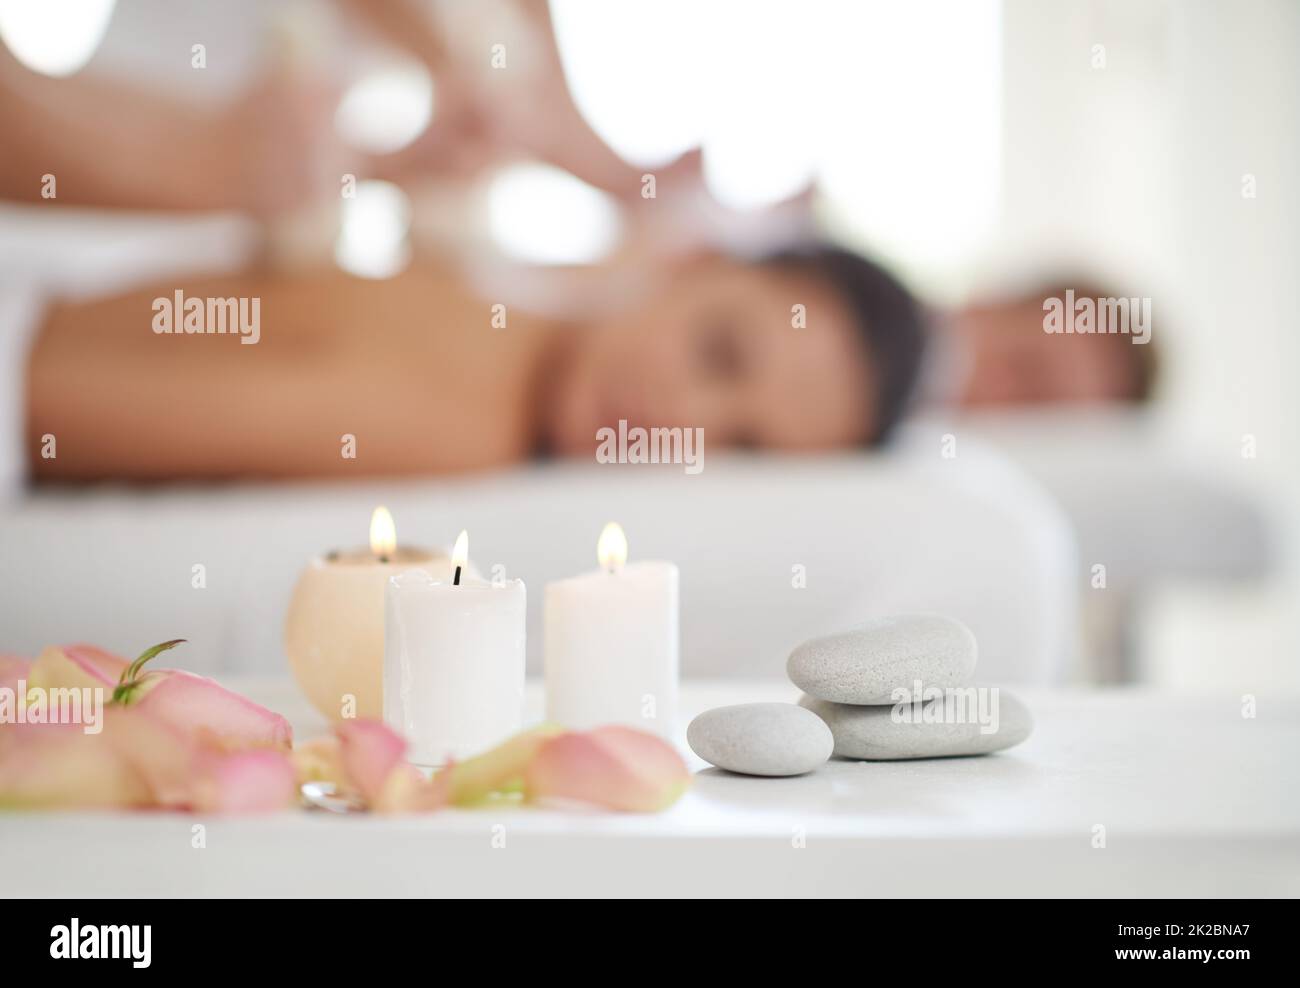 Wunderbare Entspannung. Ein Ehepaar erhält Massagen in einem Spa mit Kerzen im Vordergrund. Stockfoto